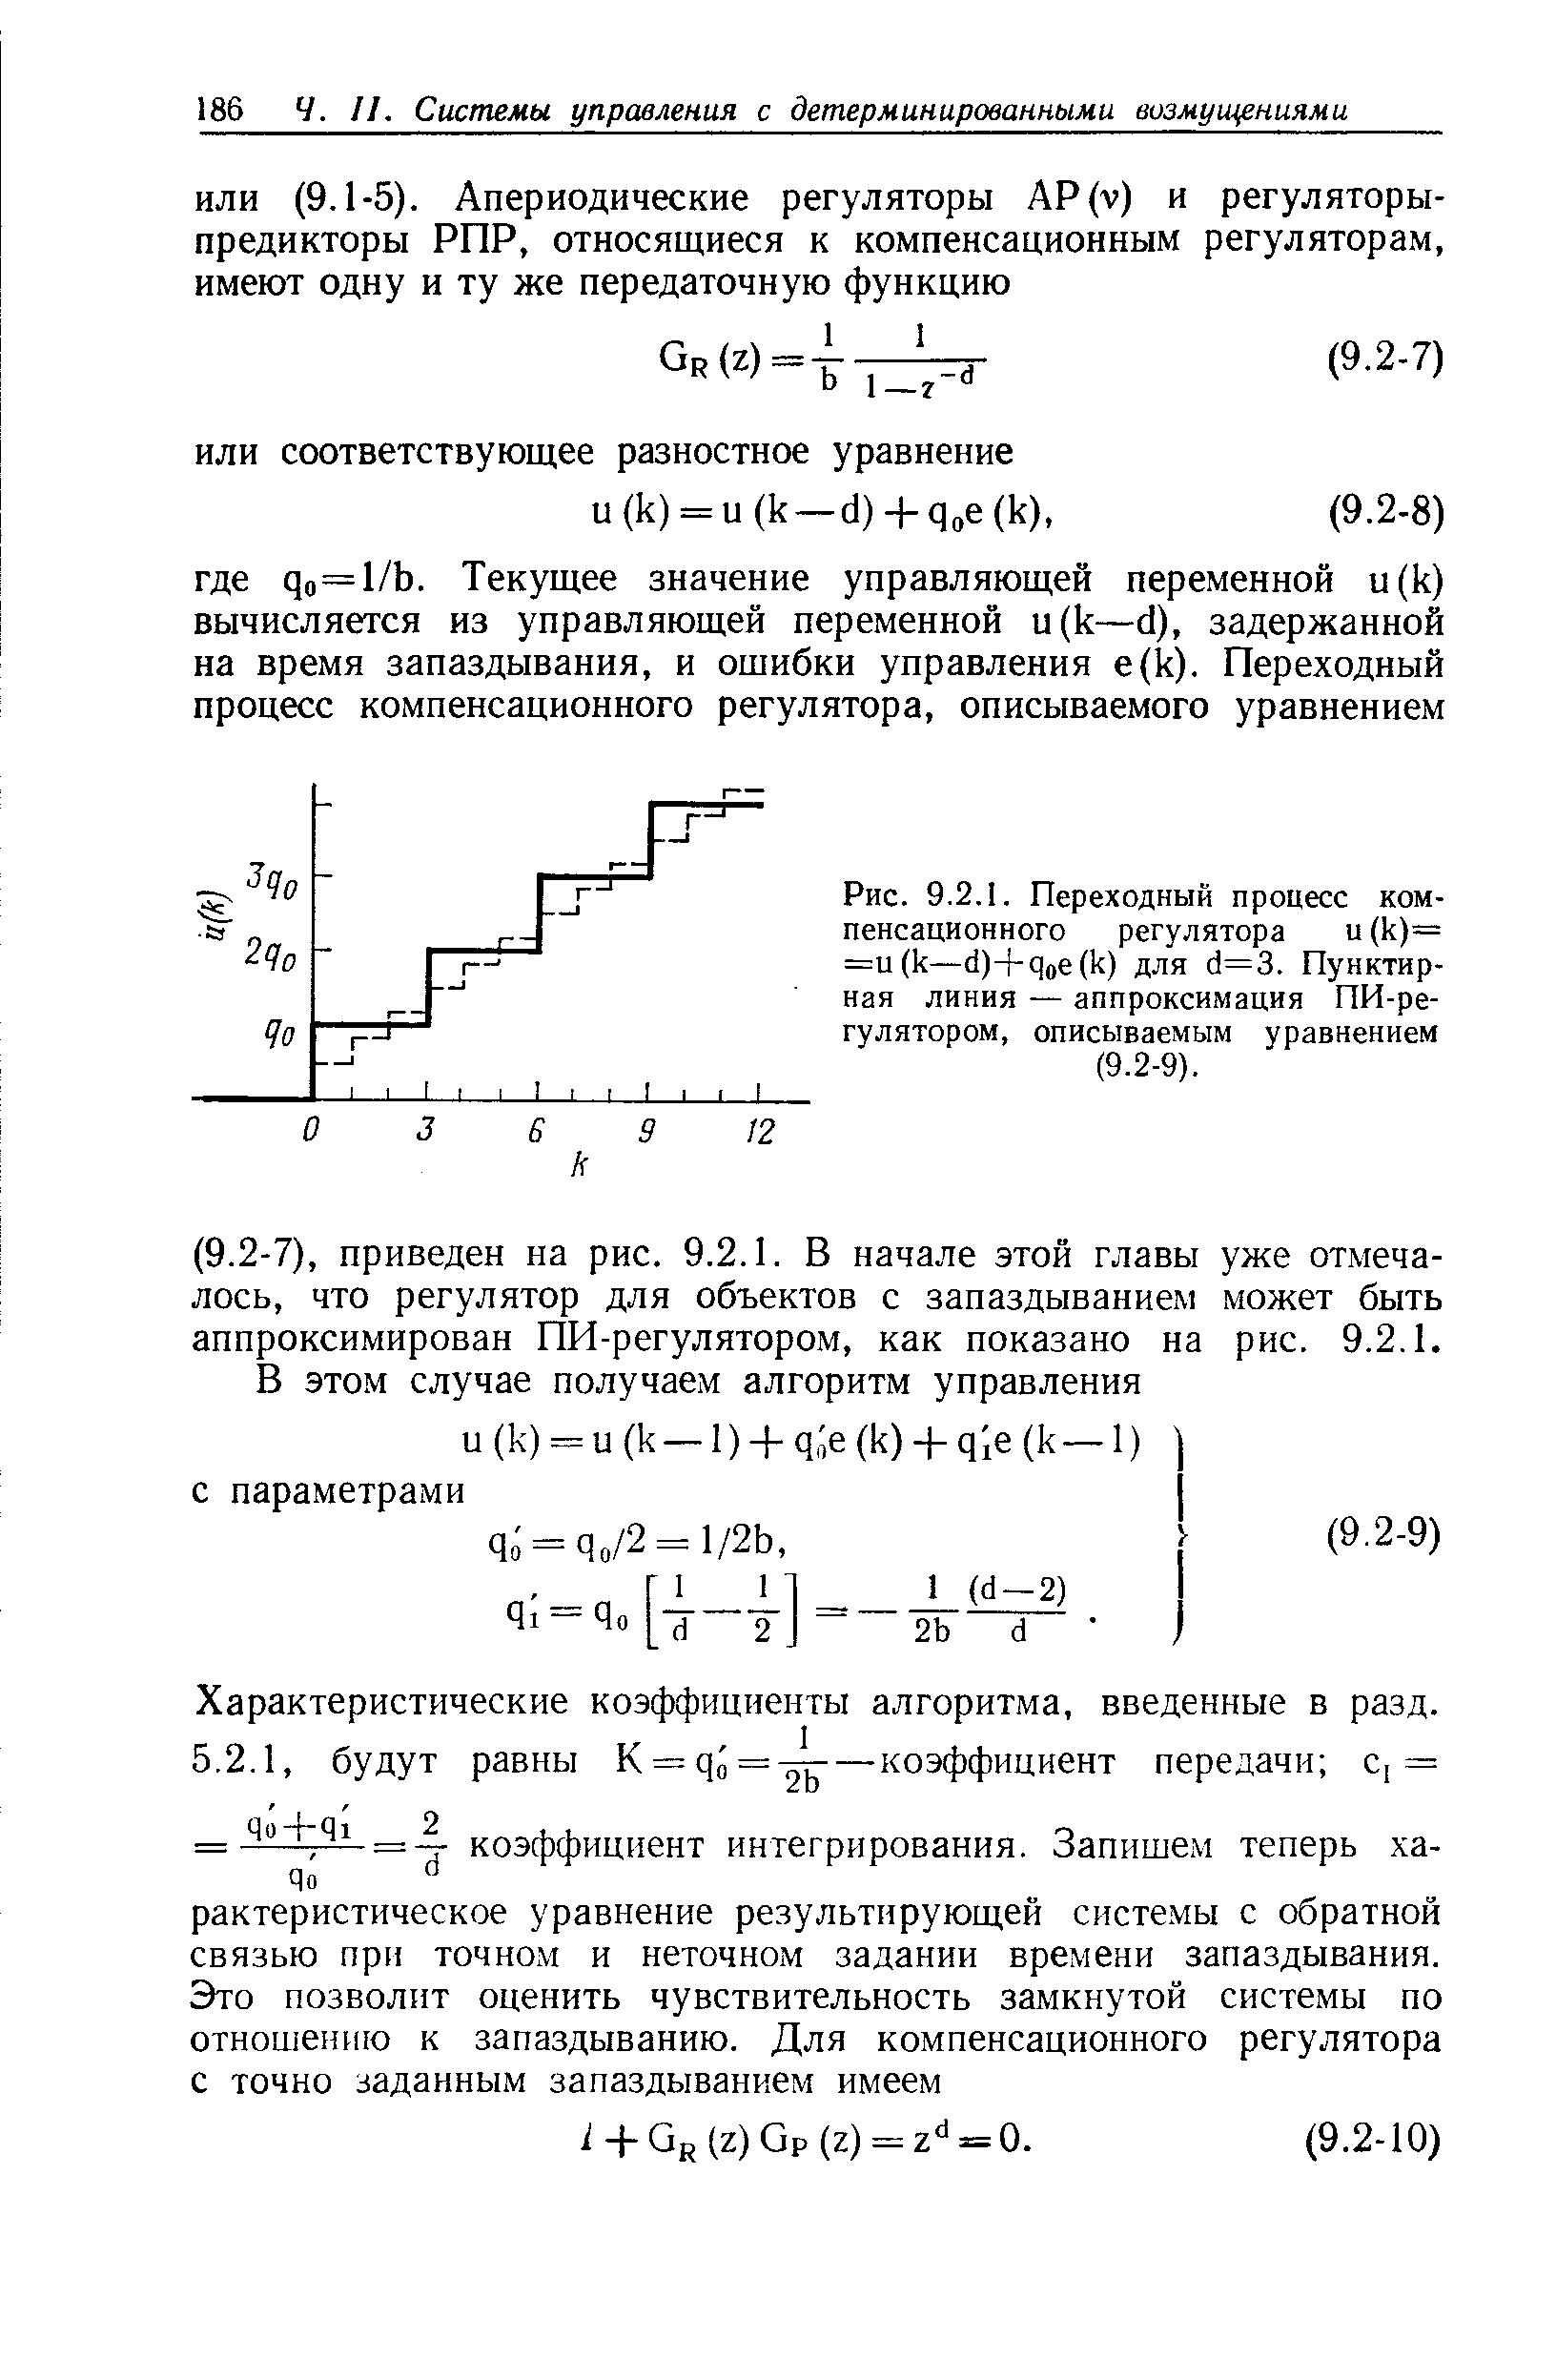 Рис. 9.2.1. <a href="/info/19460">Переходный процесс</a> компенсационного регулятора и (к)= =и(к—(1)+дое(к) для с1=3. Пунктирная линия — аппроксимация ПИ-ре-гулятором, описываемым уравнением (9.2-9).
